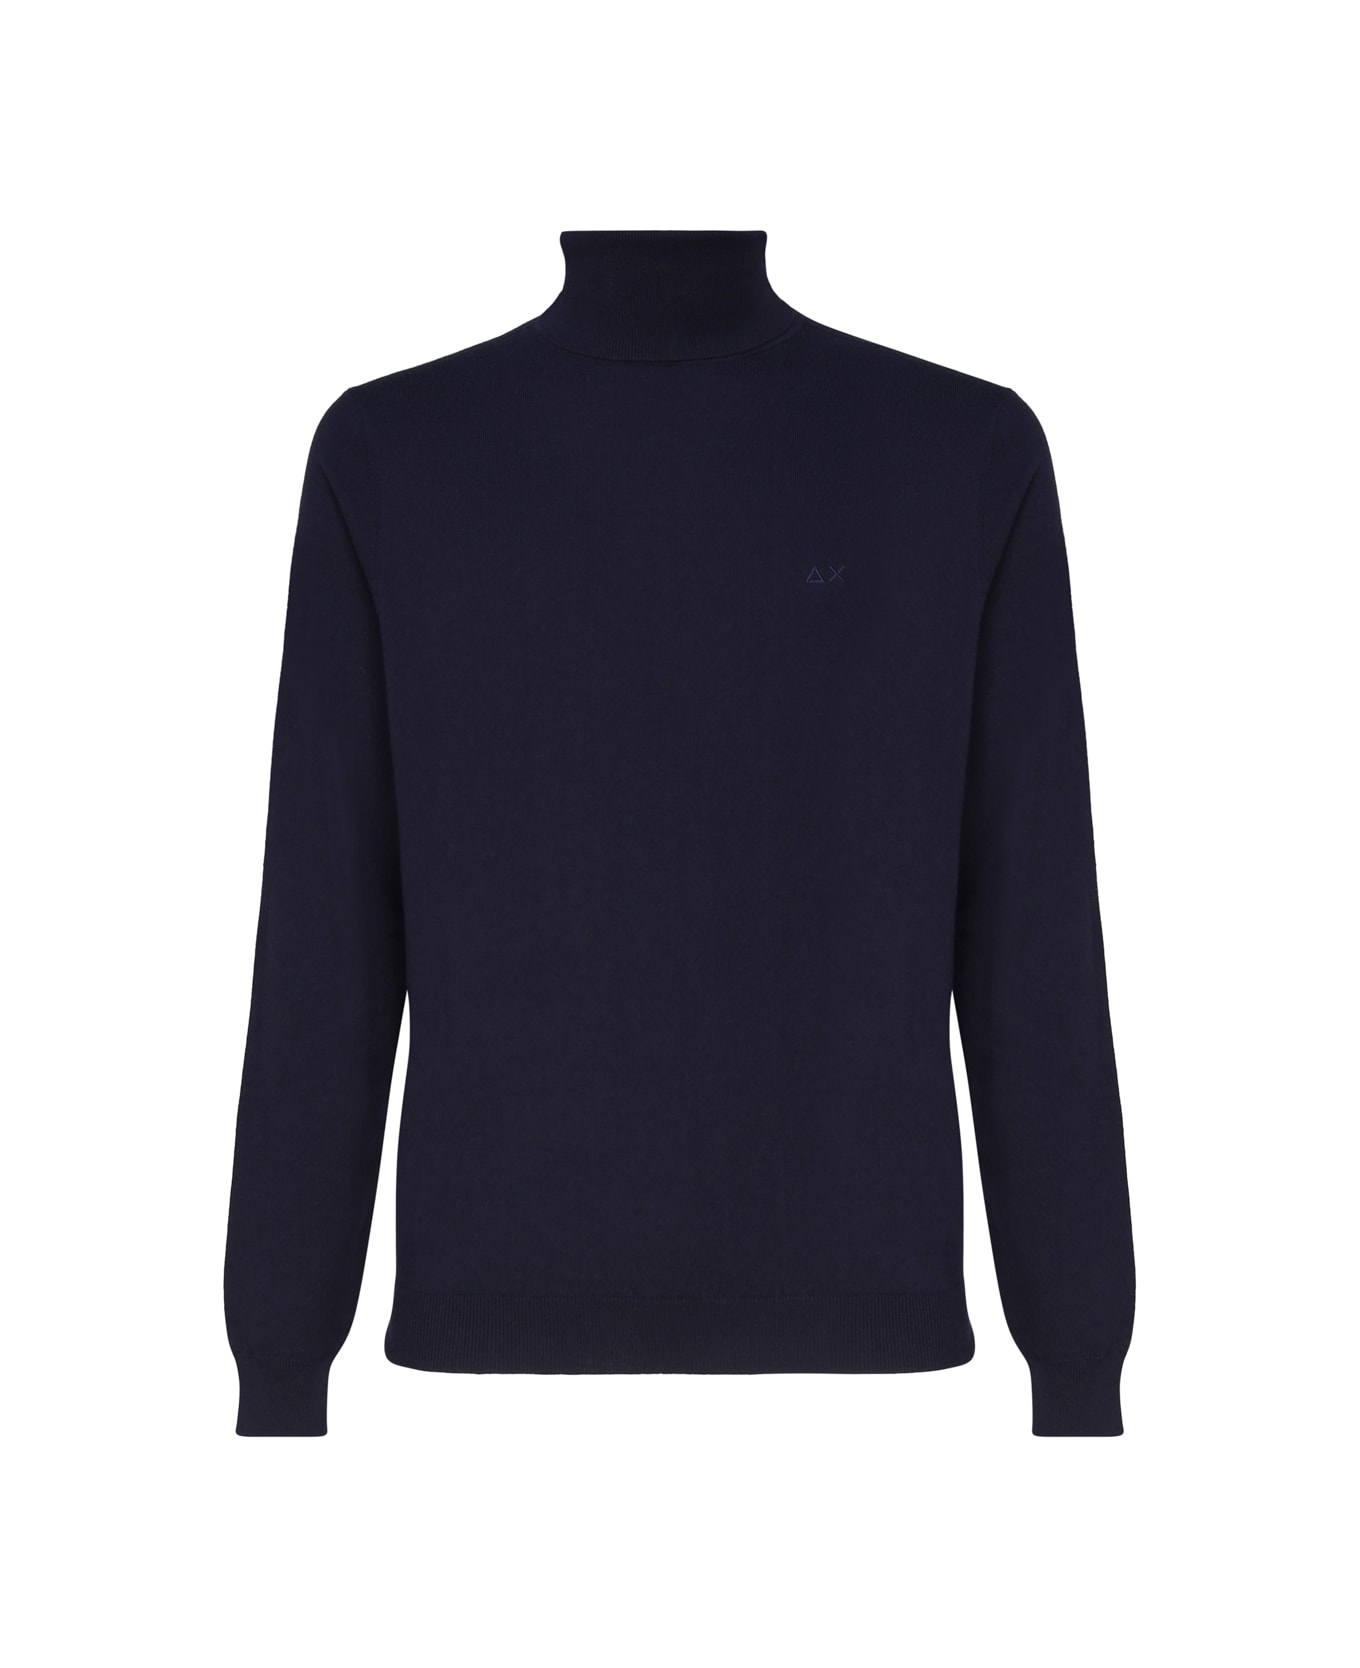 Sun 68 Wool Turtleneck Sweater - NAVY BLUE ニットウェア